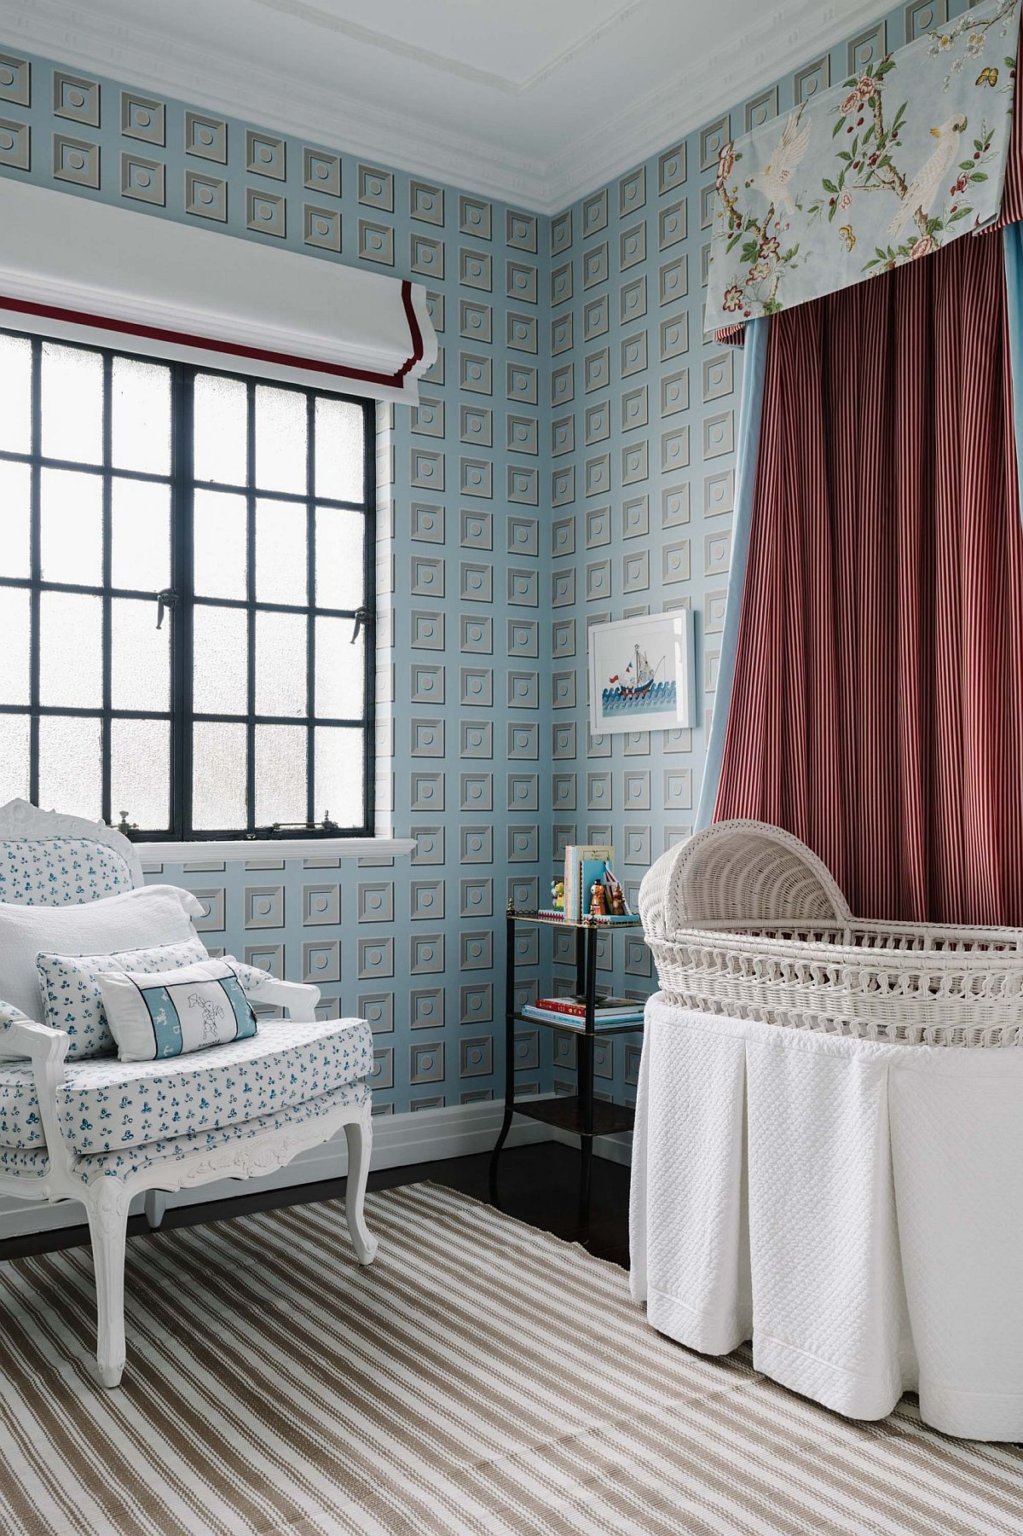 phòng ngủ trẻ em phong cách cổ điển với giấy dán tường họa tiết hiện đại, màu xanh xám, rèm cửa màu đỏ đo, ghế cổ điển